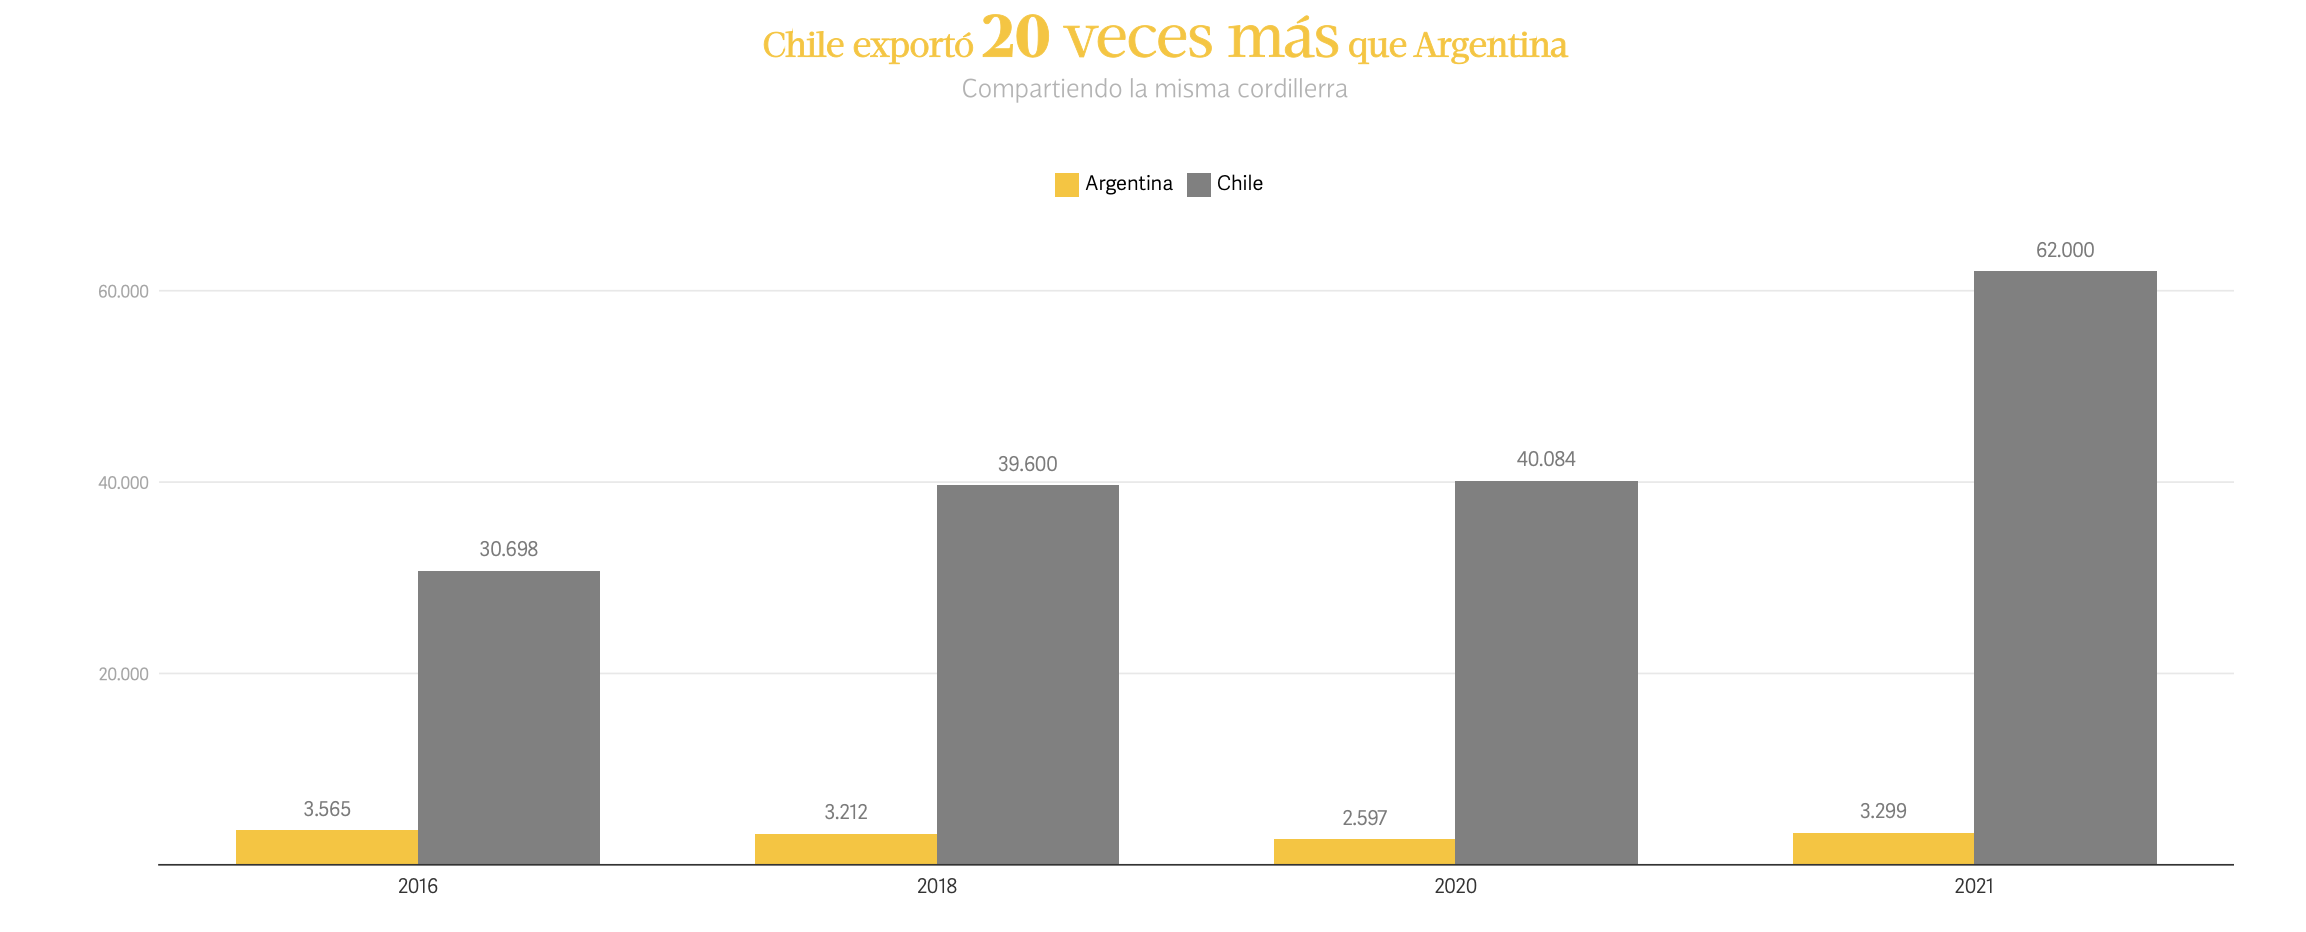 Chile exporta 20 veces más que Argentina y comparten la misma cordillera